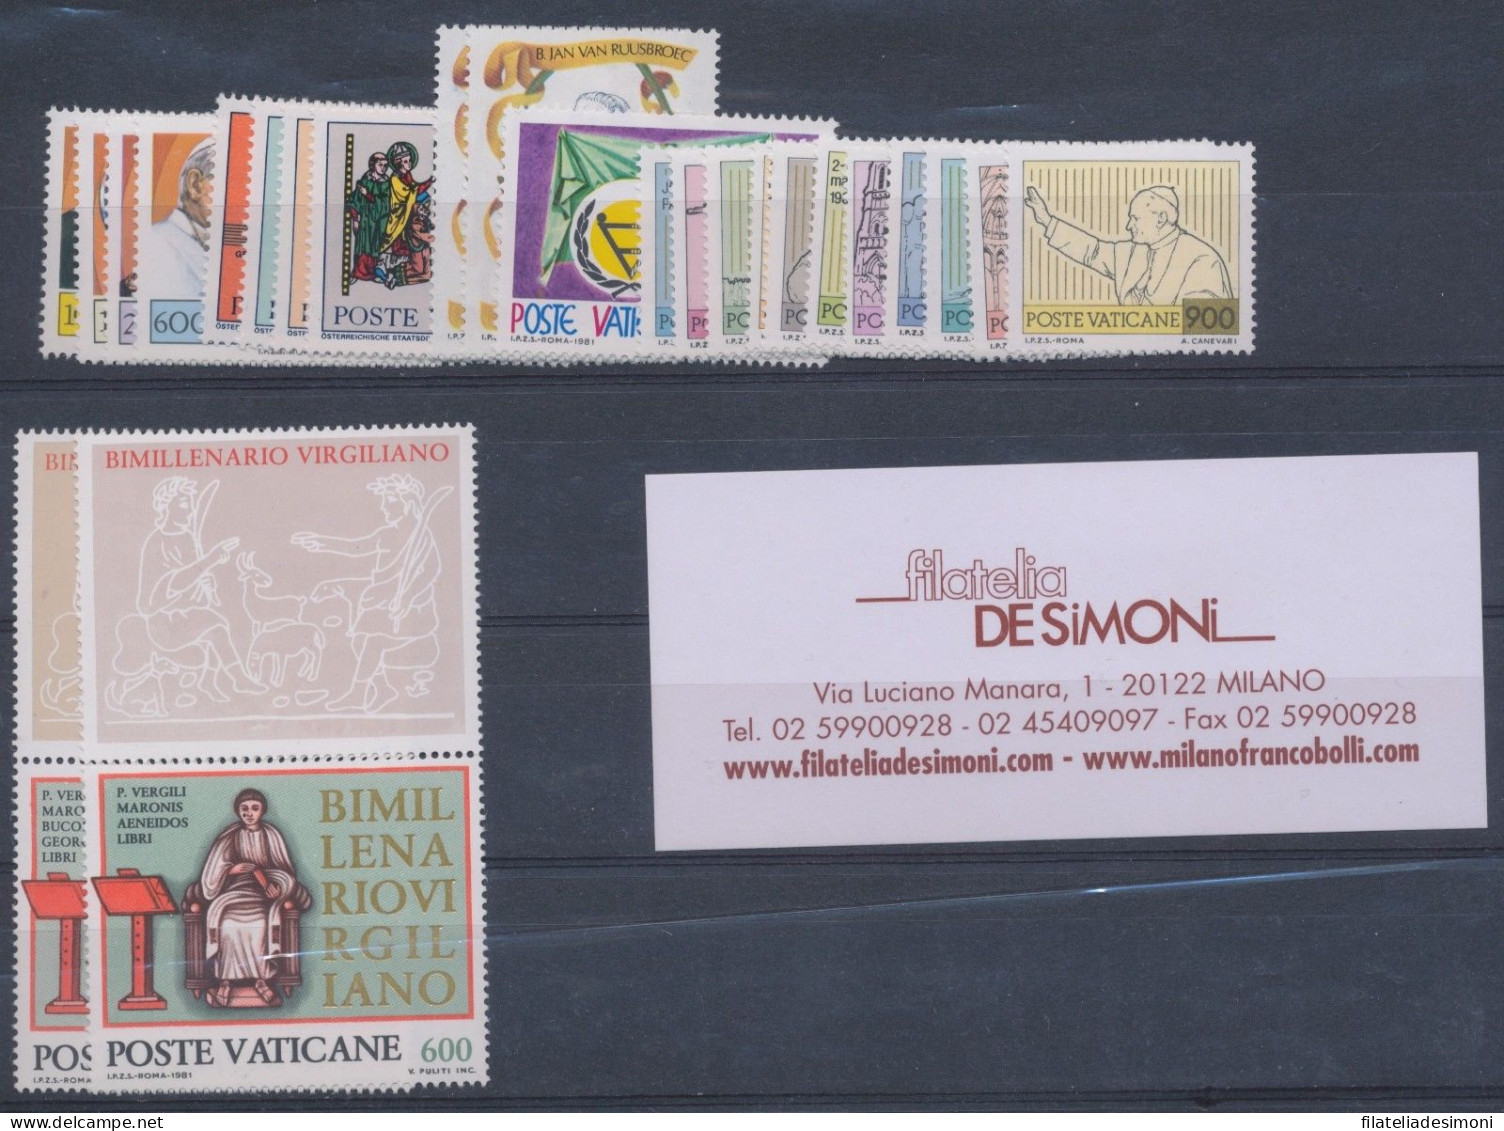 1981 Vaticano, Francobolli Nuovi, Annata Completa 24 Val  MNH ** - Annate Complete